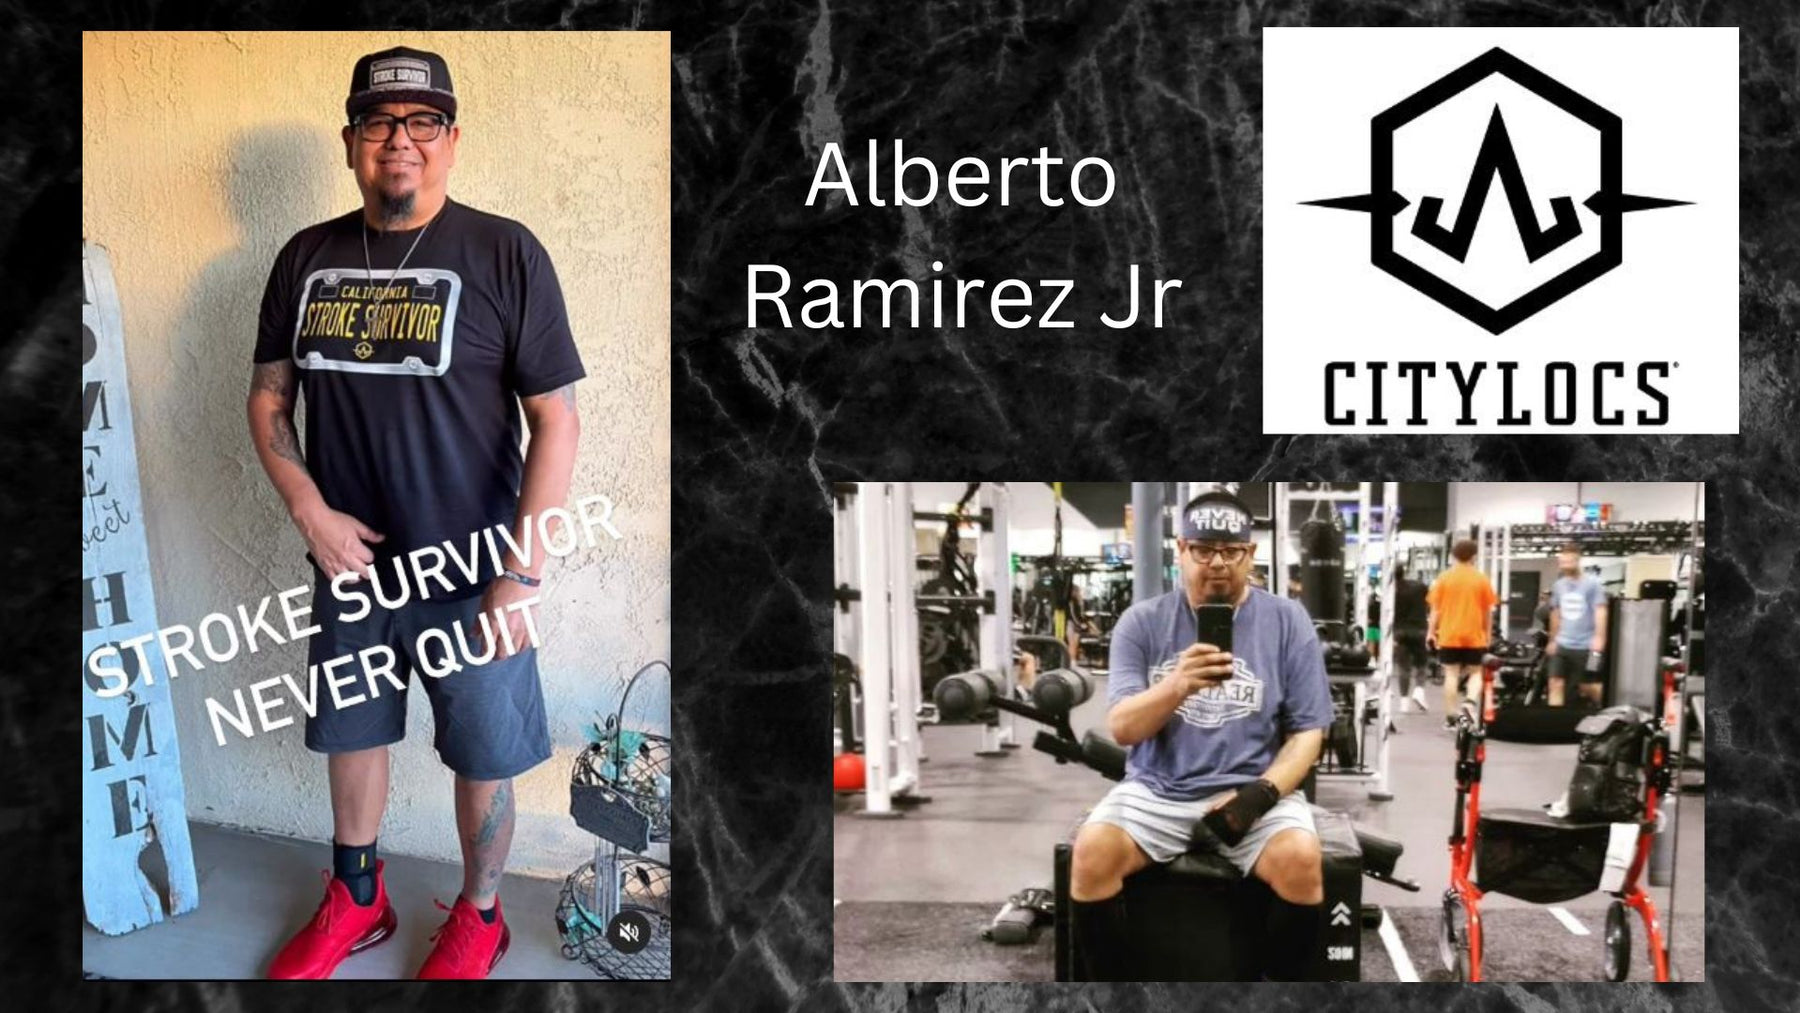 Alberto Ramirez Jr. Refuses To Quit